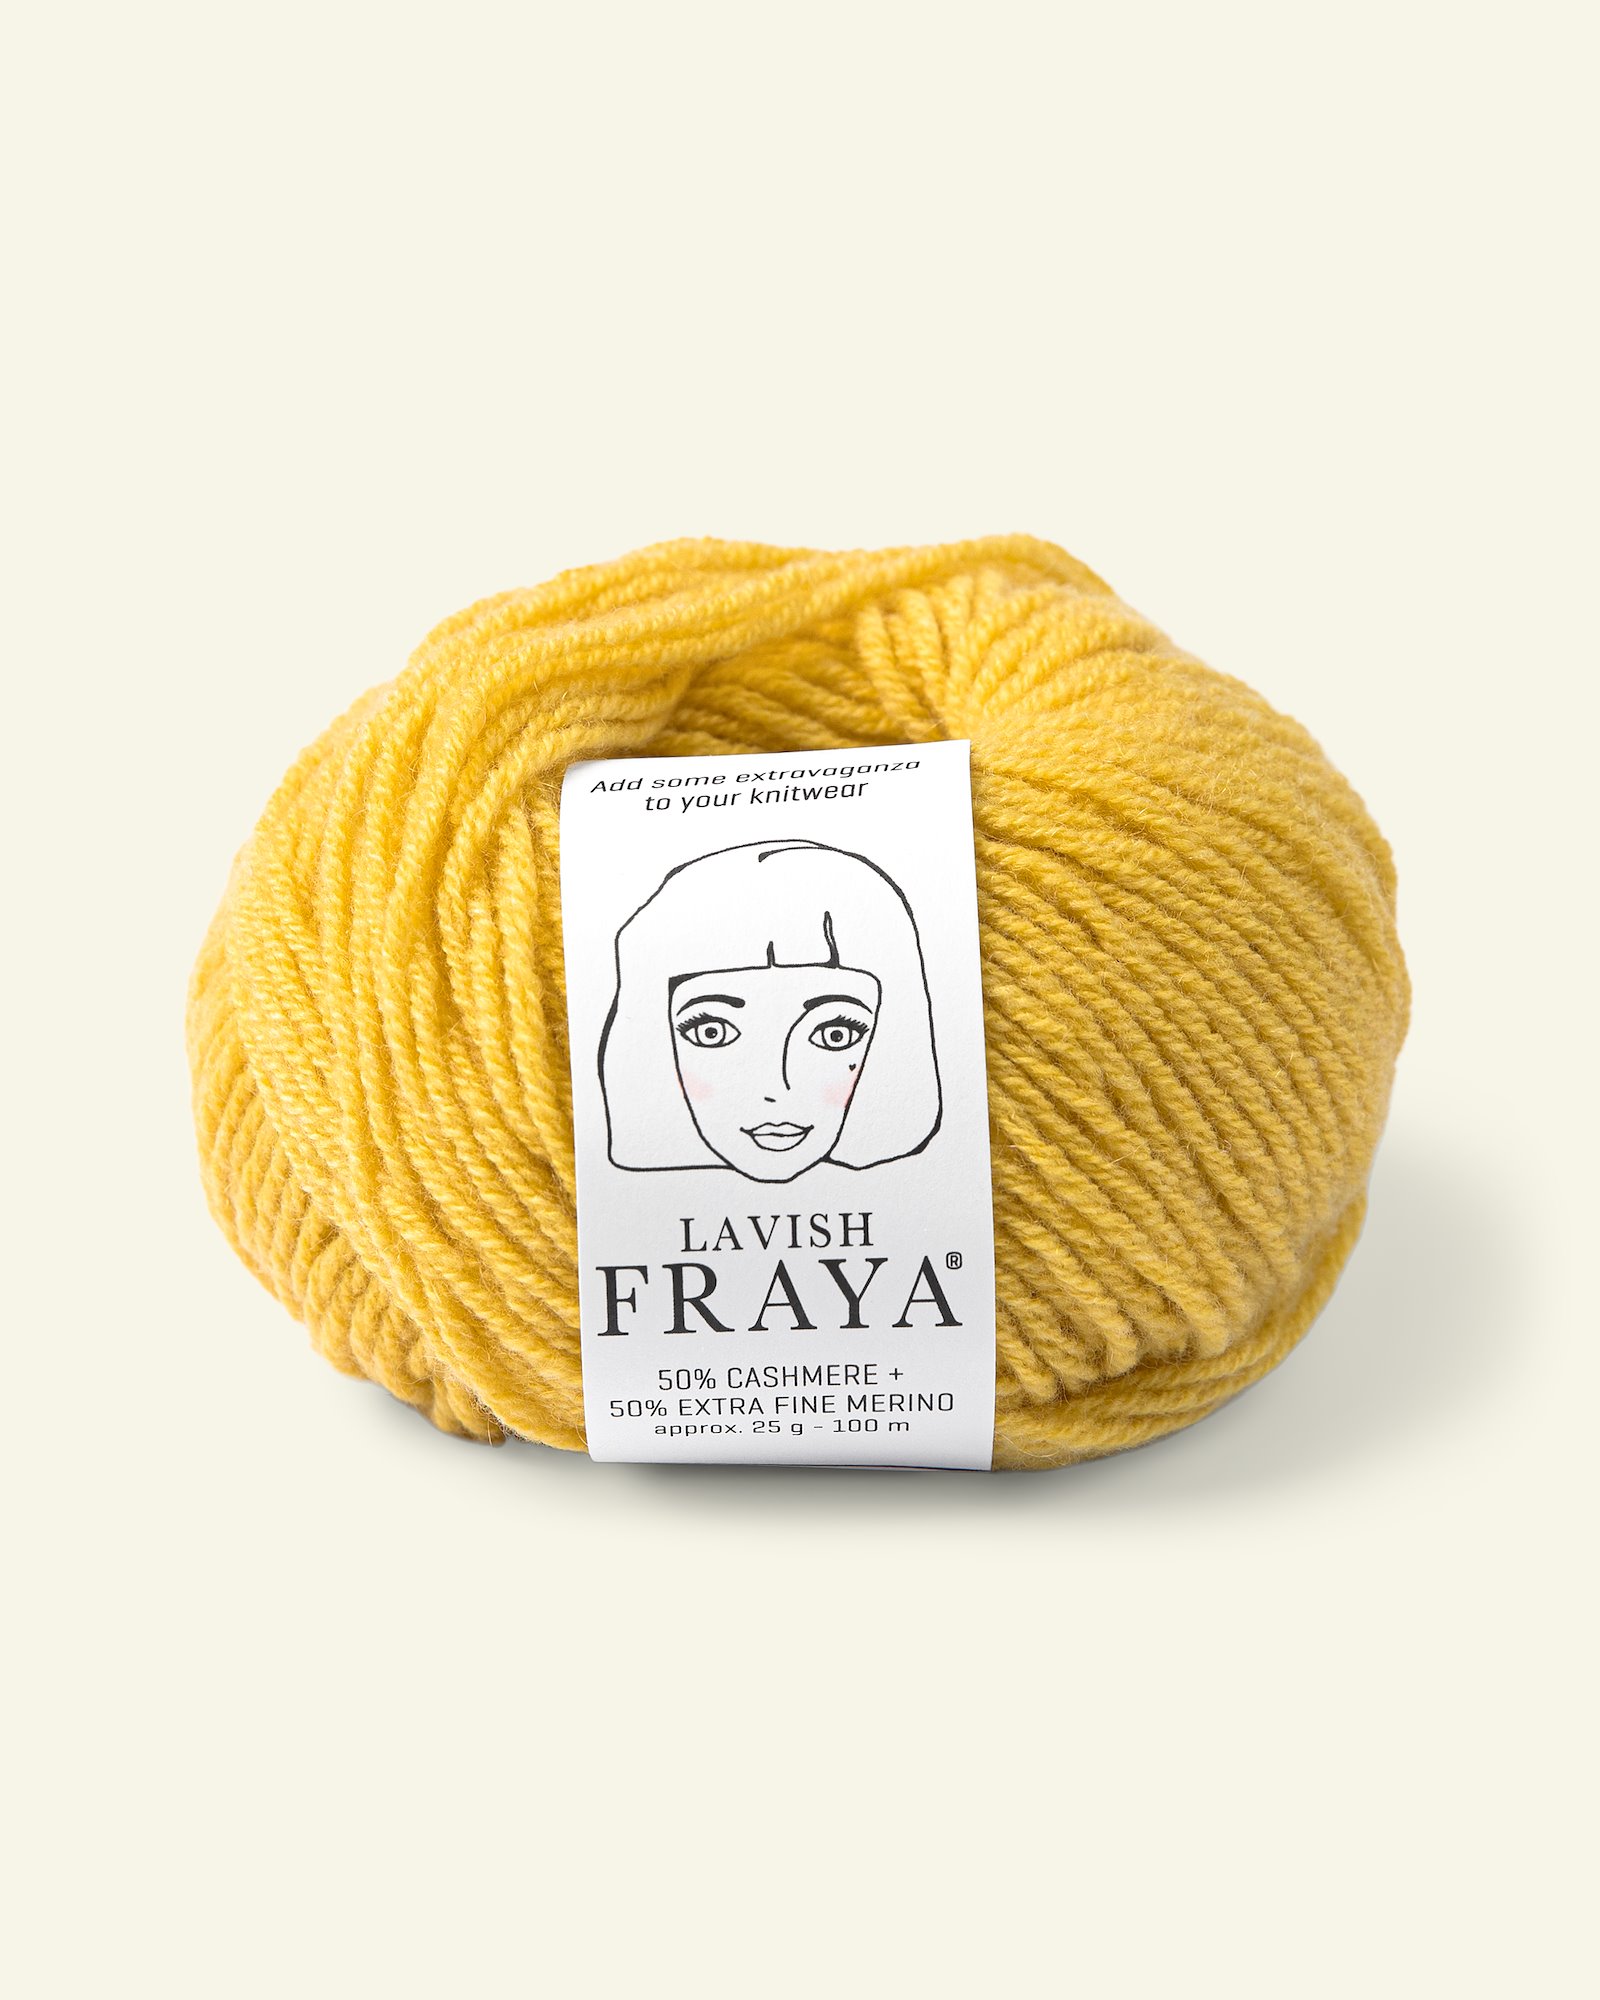 FRAYA yarn Lavish maize yellow 90000212_pack.png